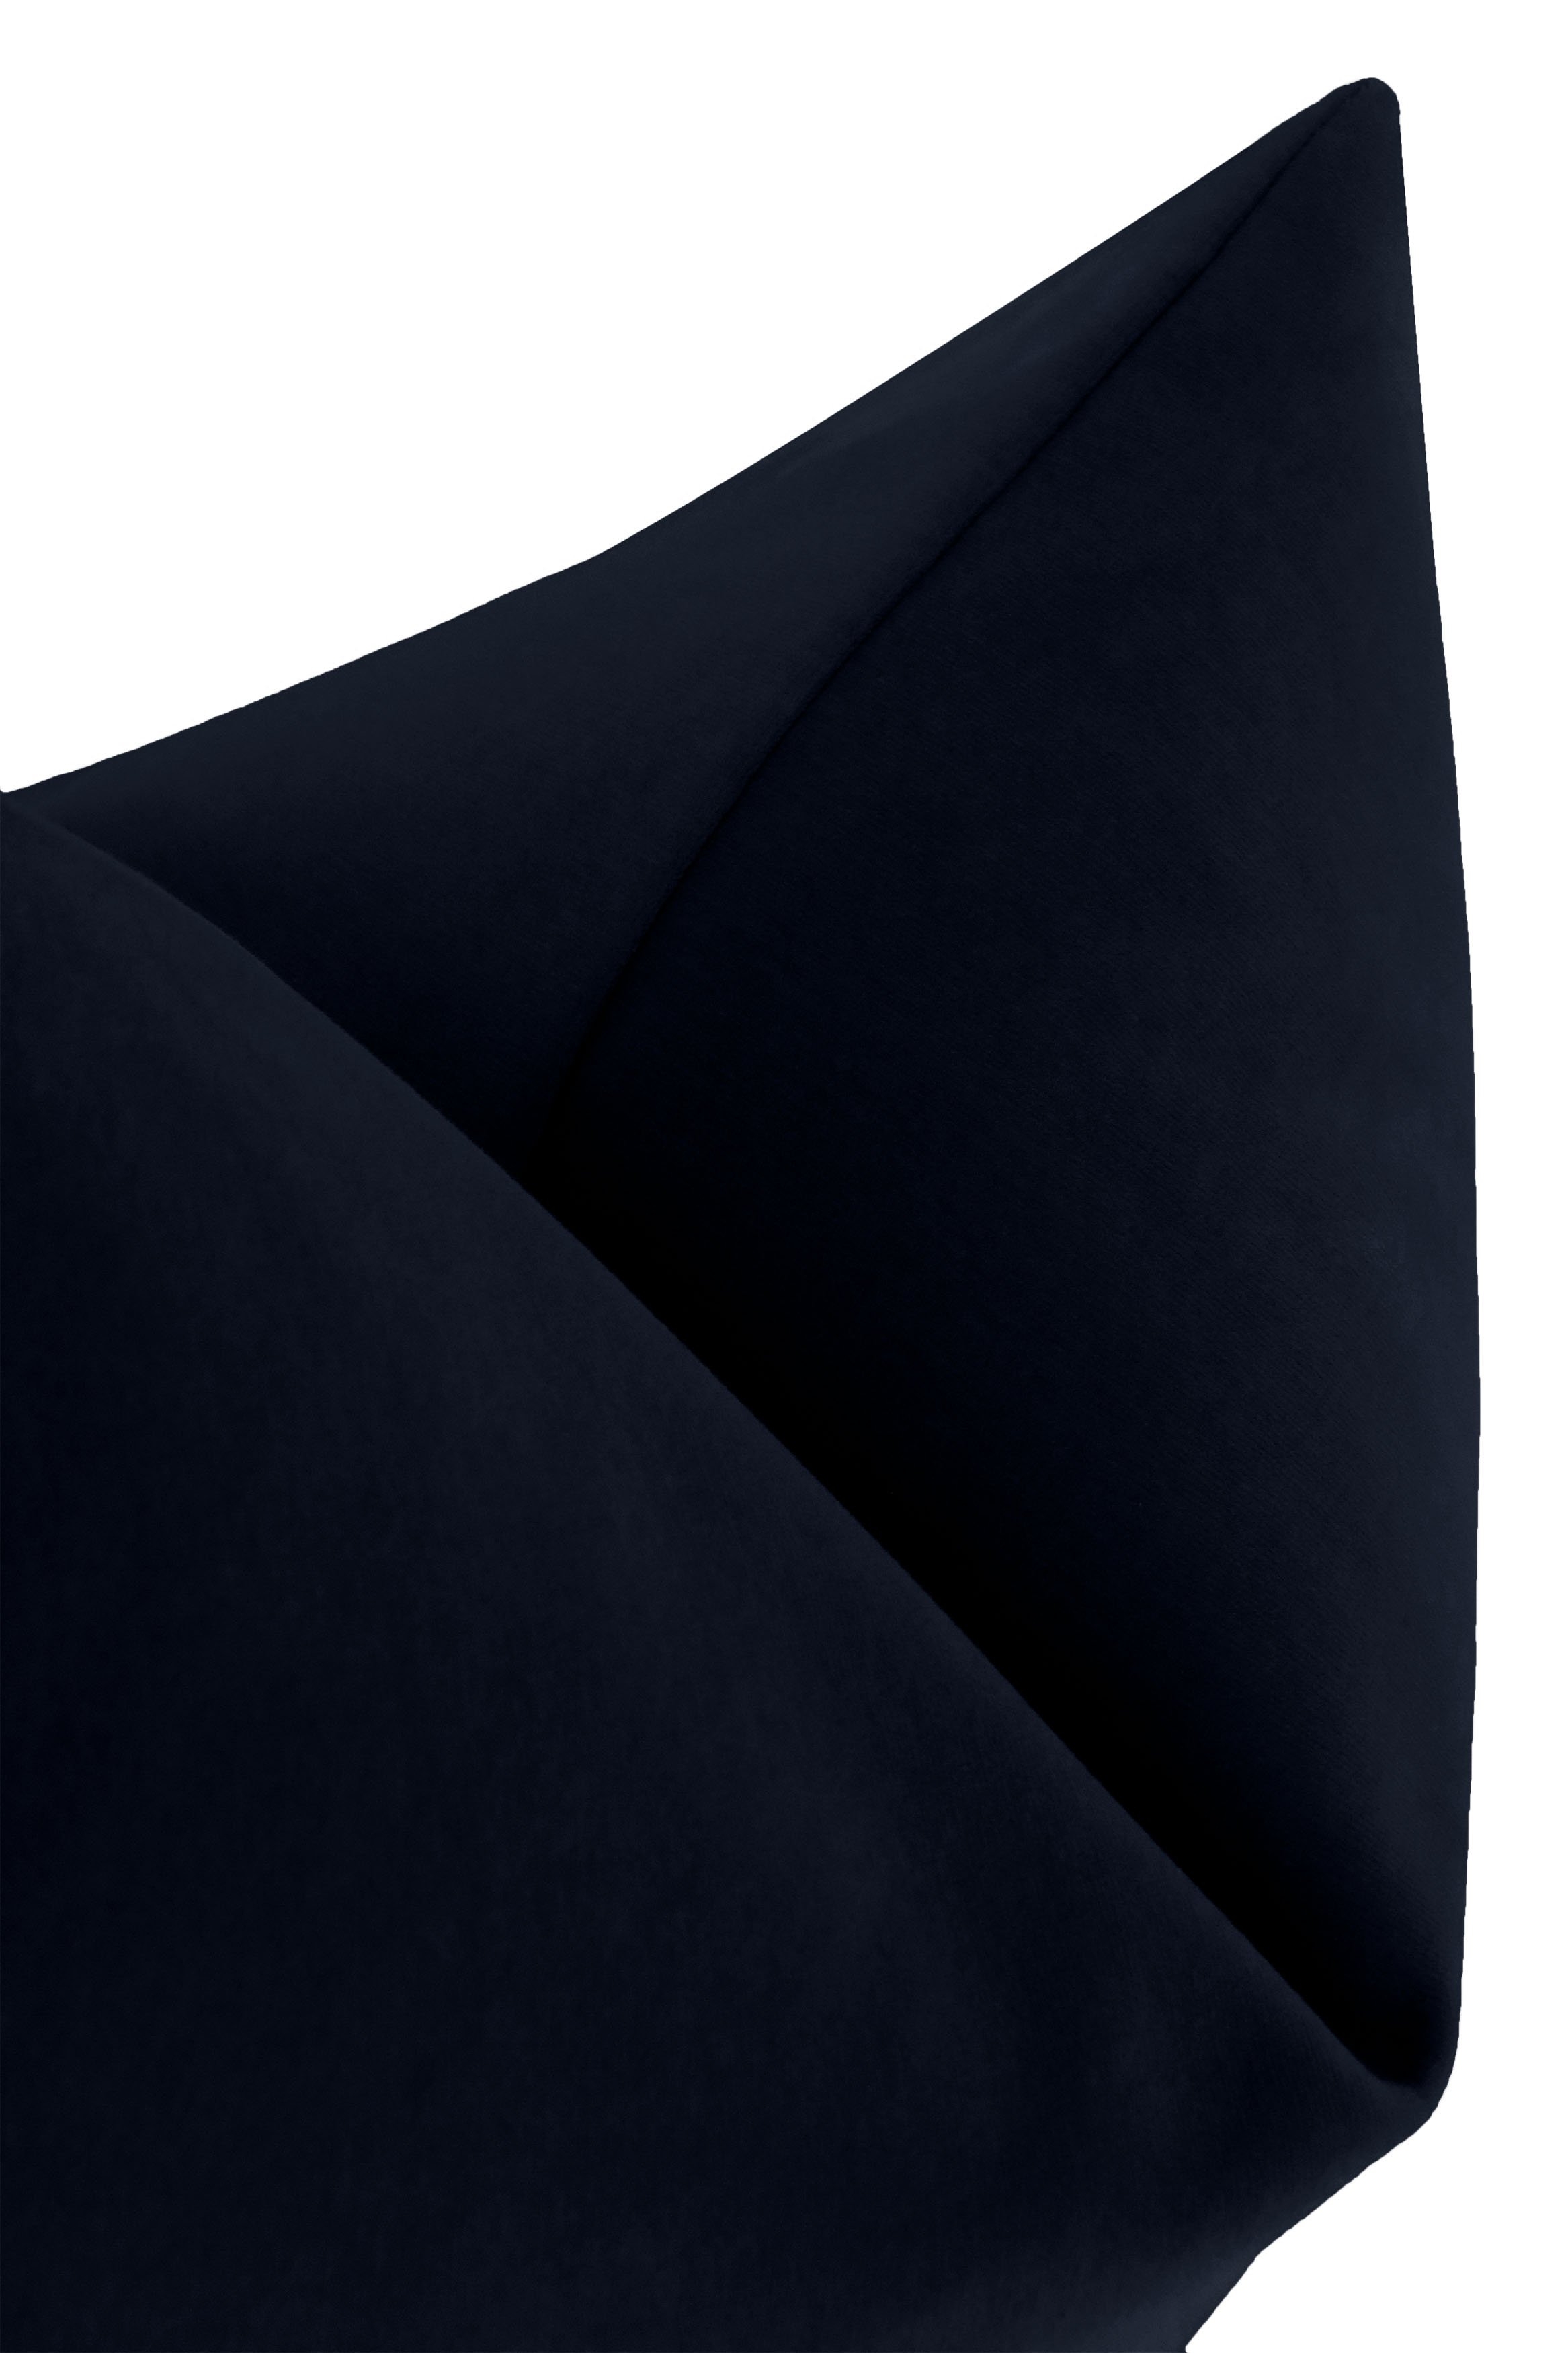 Studio Velvet Throw Pillow Cover, Navy Blue, 20" x 20" - Image 1